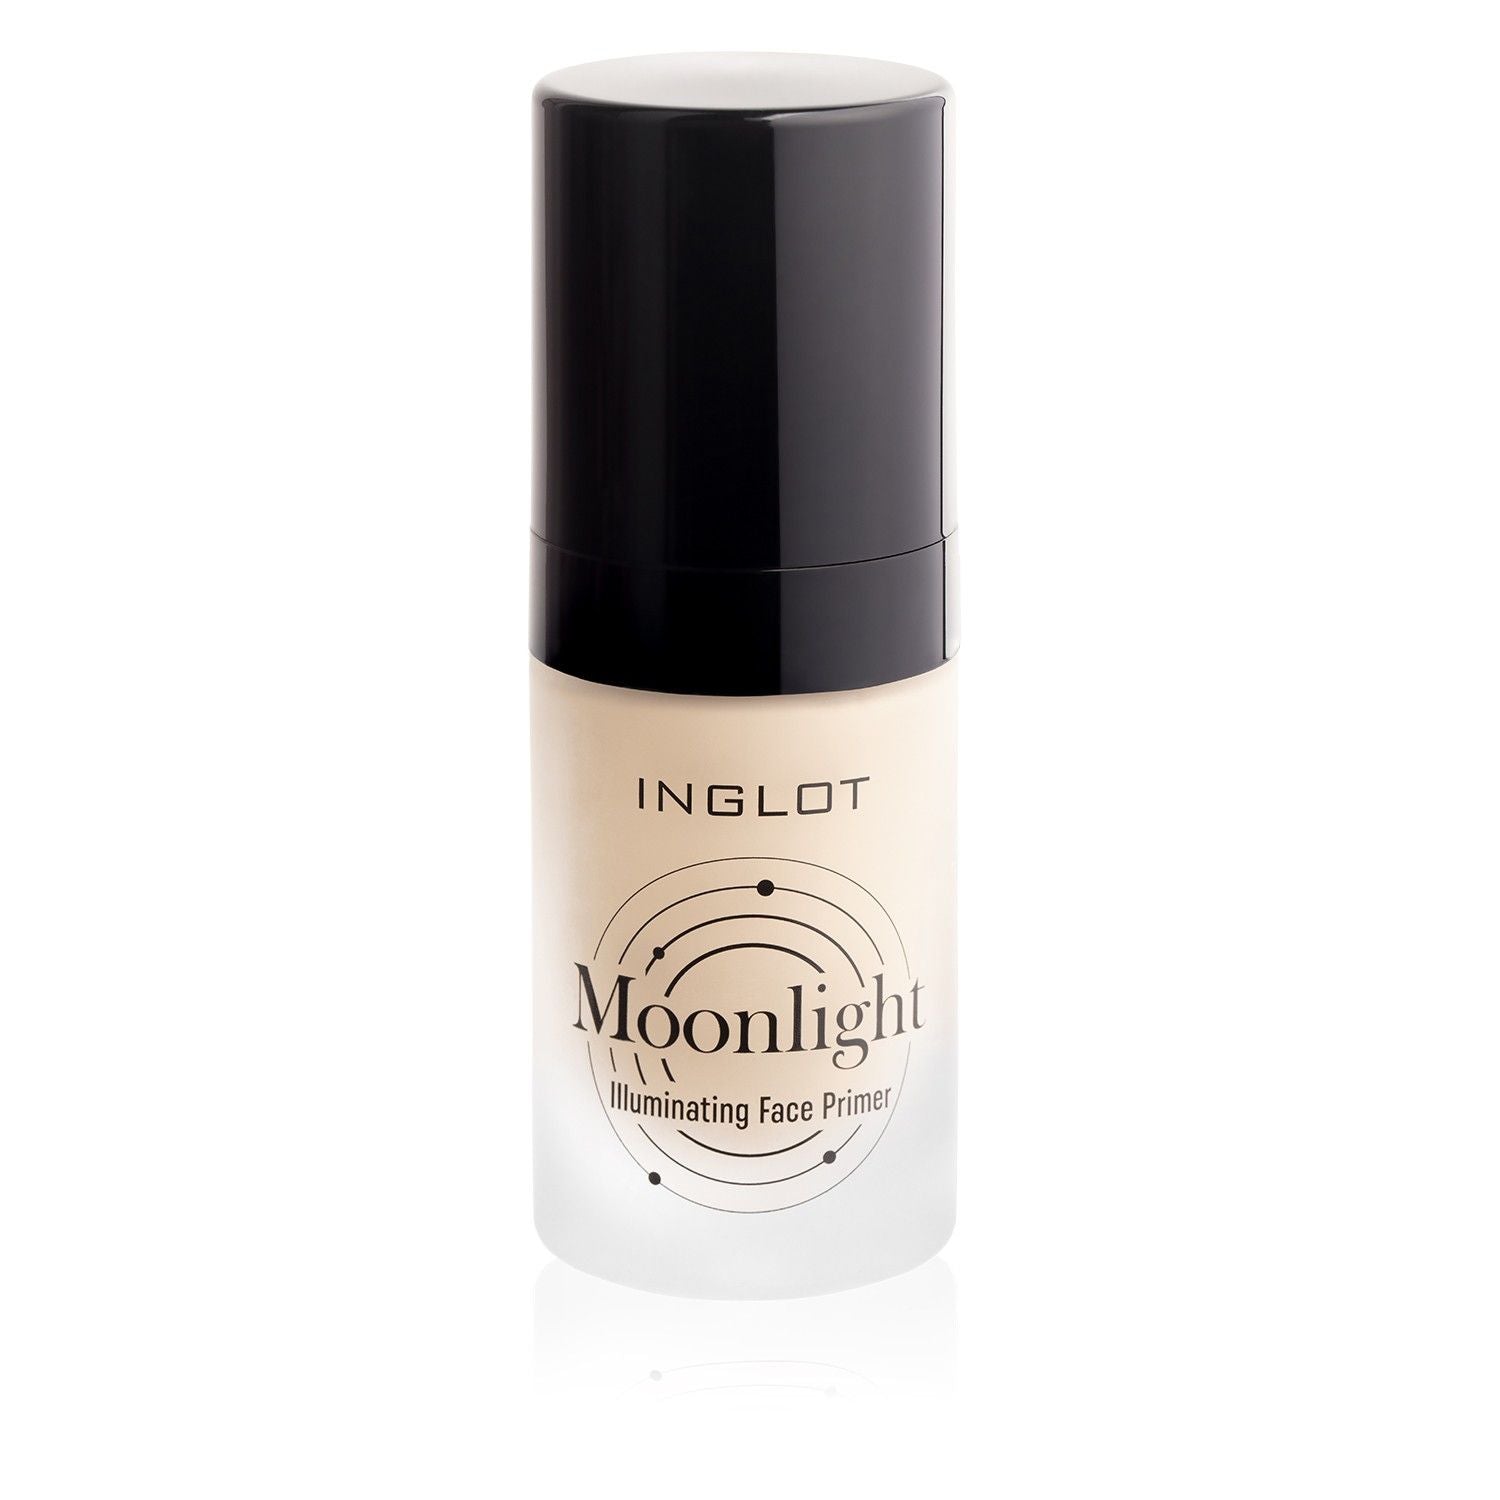 Moonlight Illuminating Face Primer 21 - Inglot Cosmetics